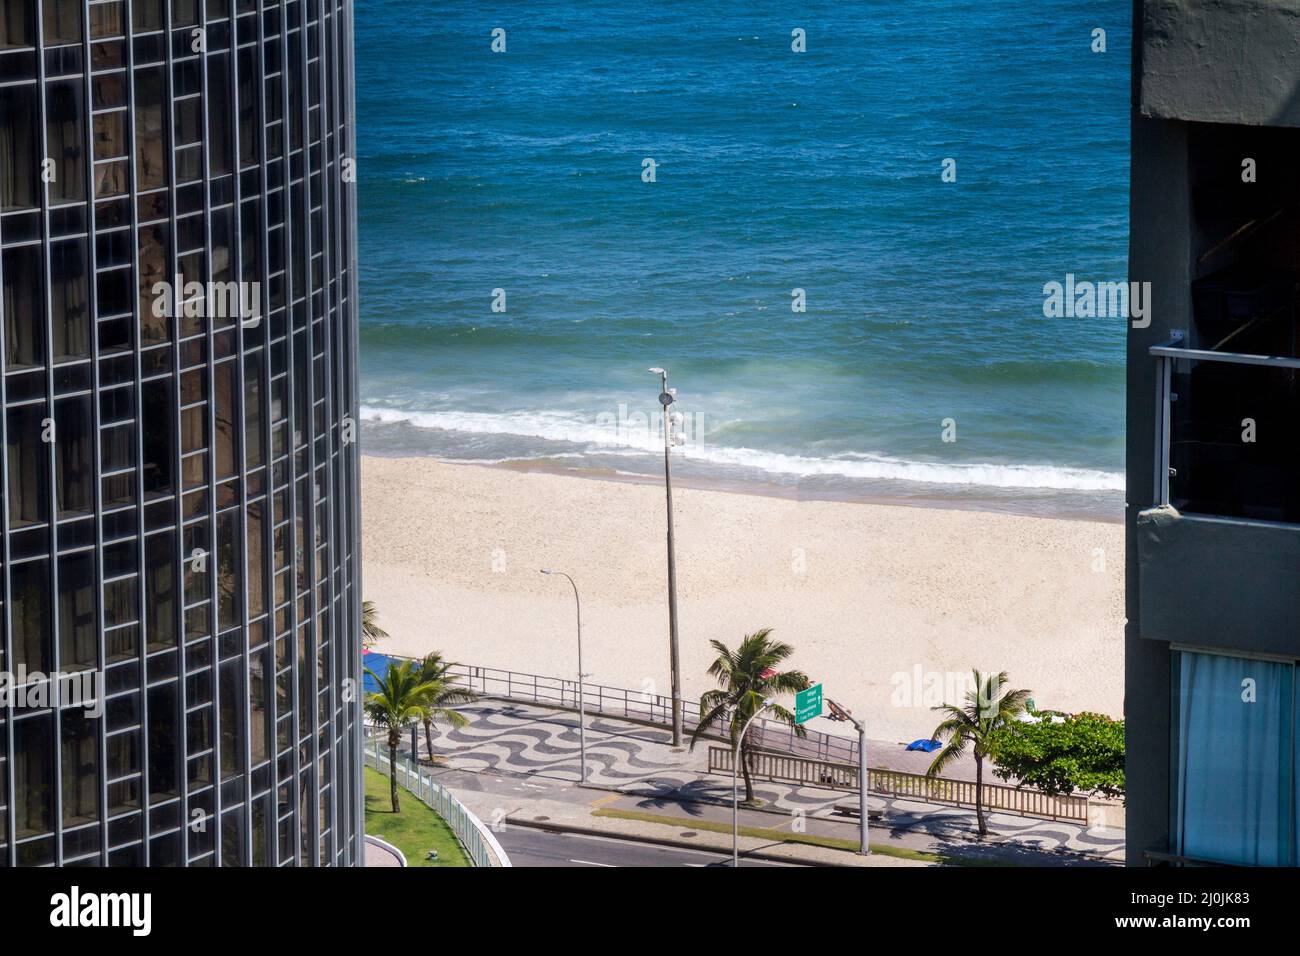 Sao Conrado Beach in Rio de Janeiro, Brazil. Stock Photo